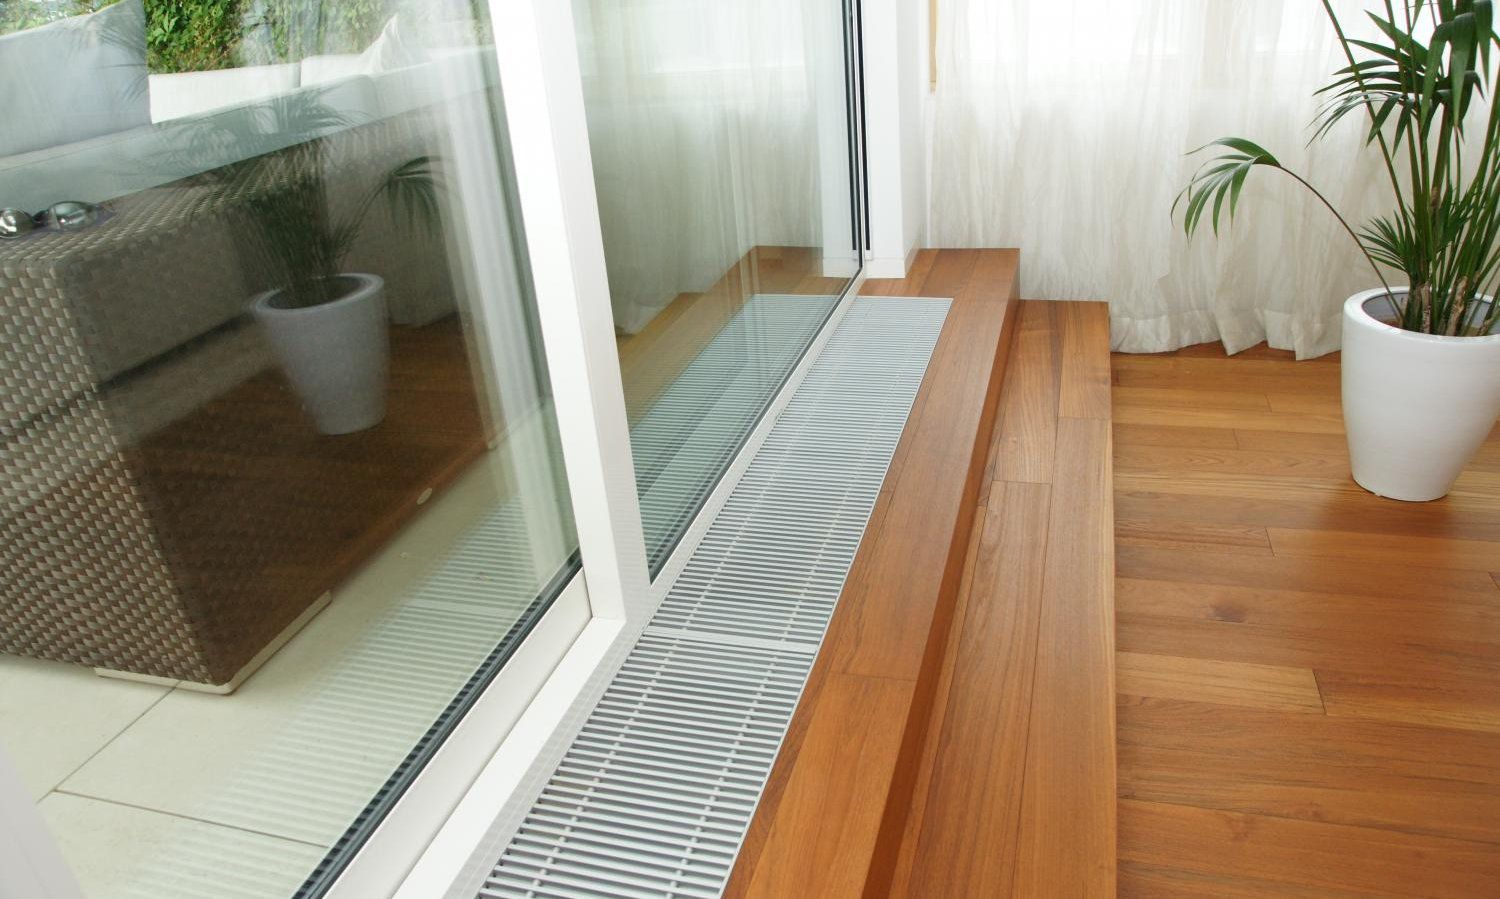 Podlahové konvektory pri presklennych oknach